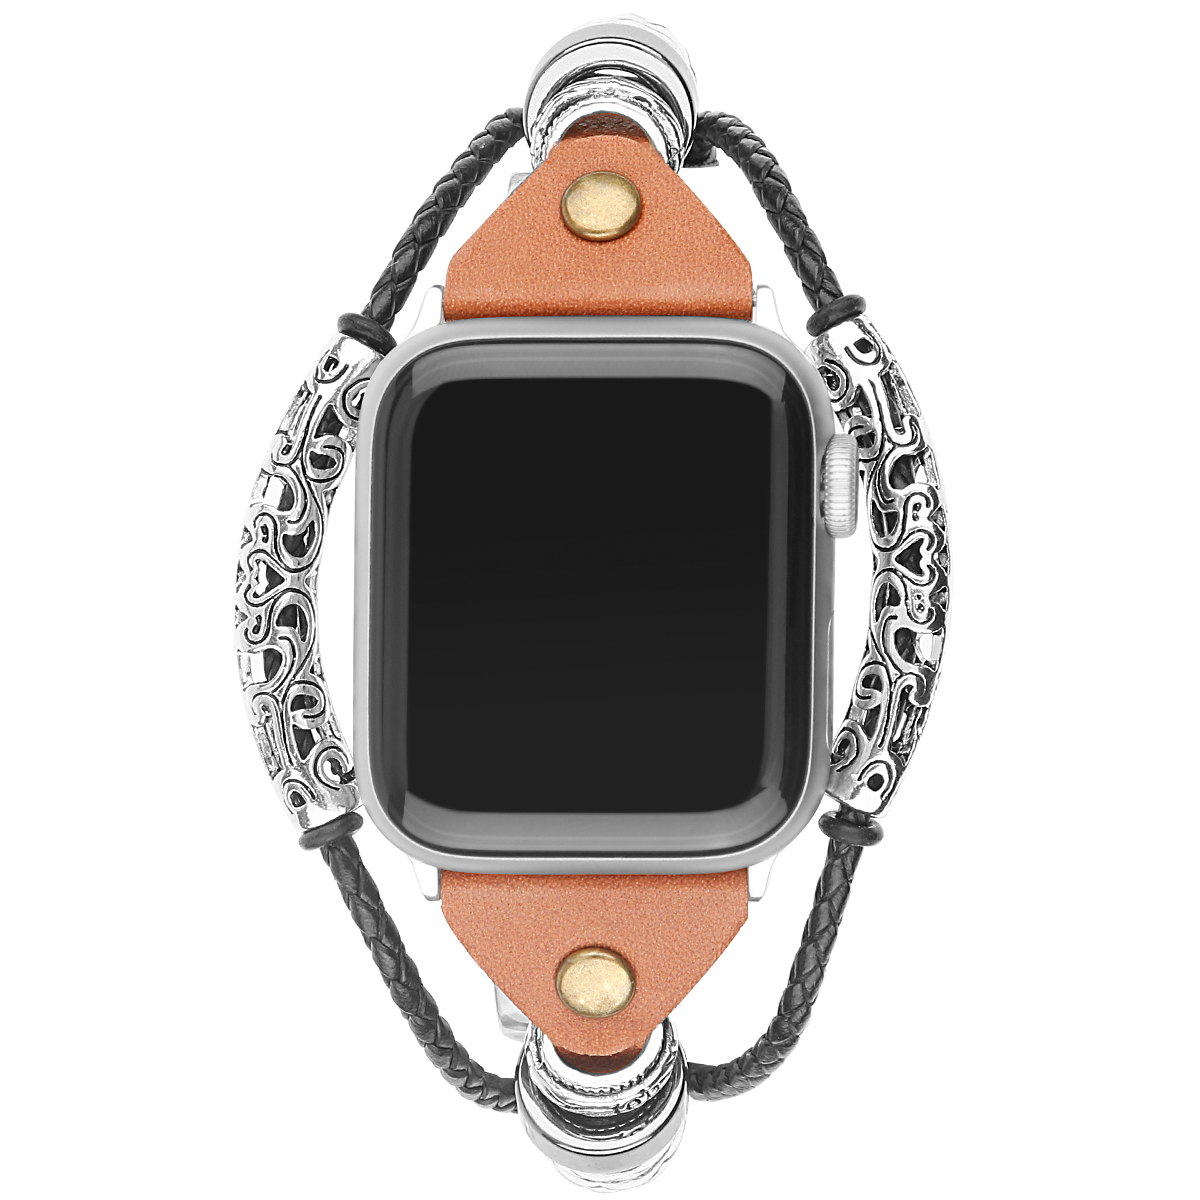 Cinturino gioiello in pelle robusto per Apple Watch - Marrone chiaro